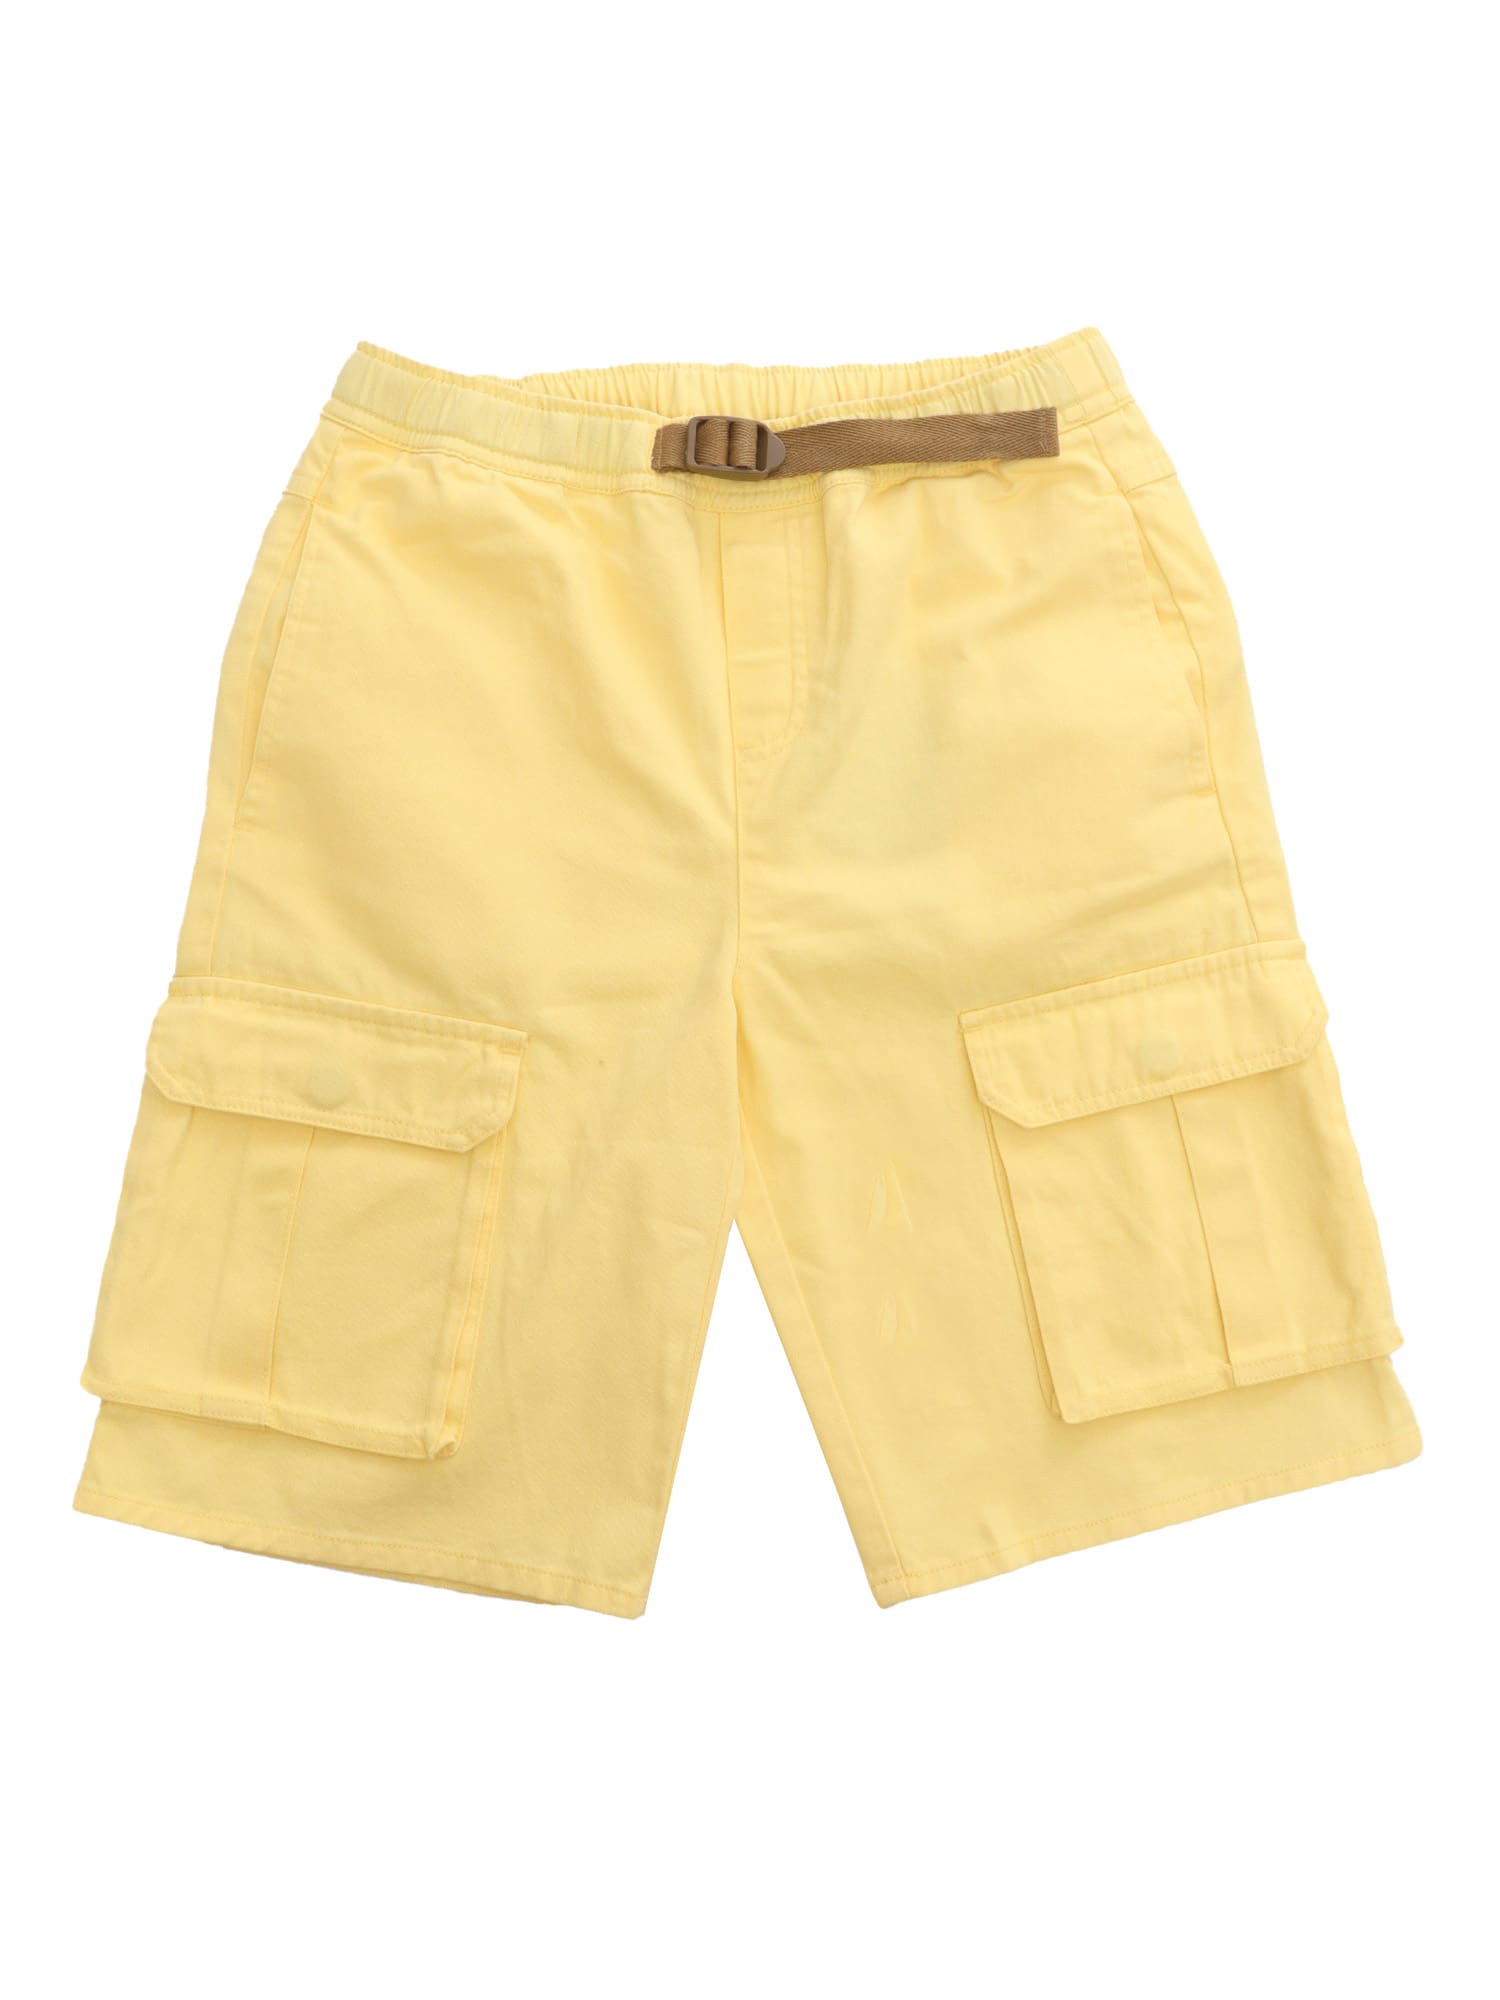 Stella Mccartney Kids' Yellow Shorts With Pockets